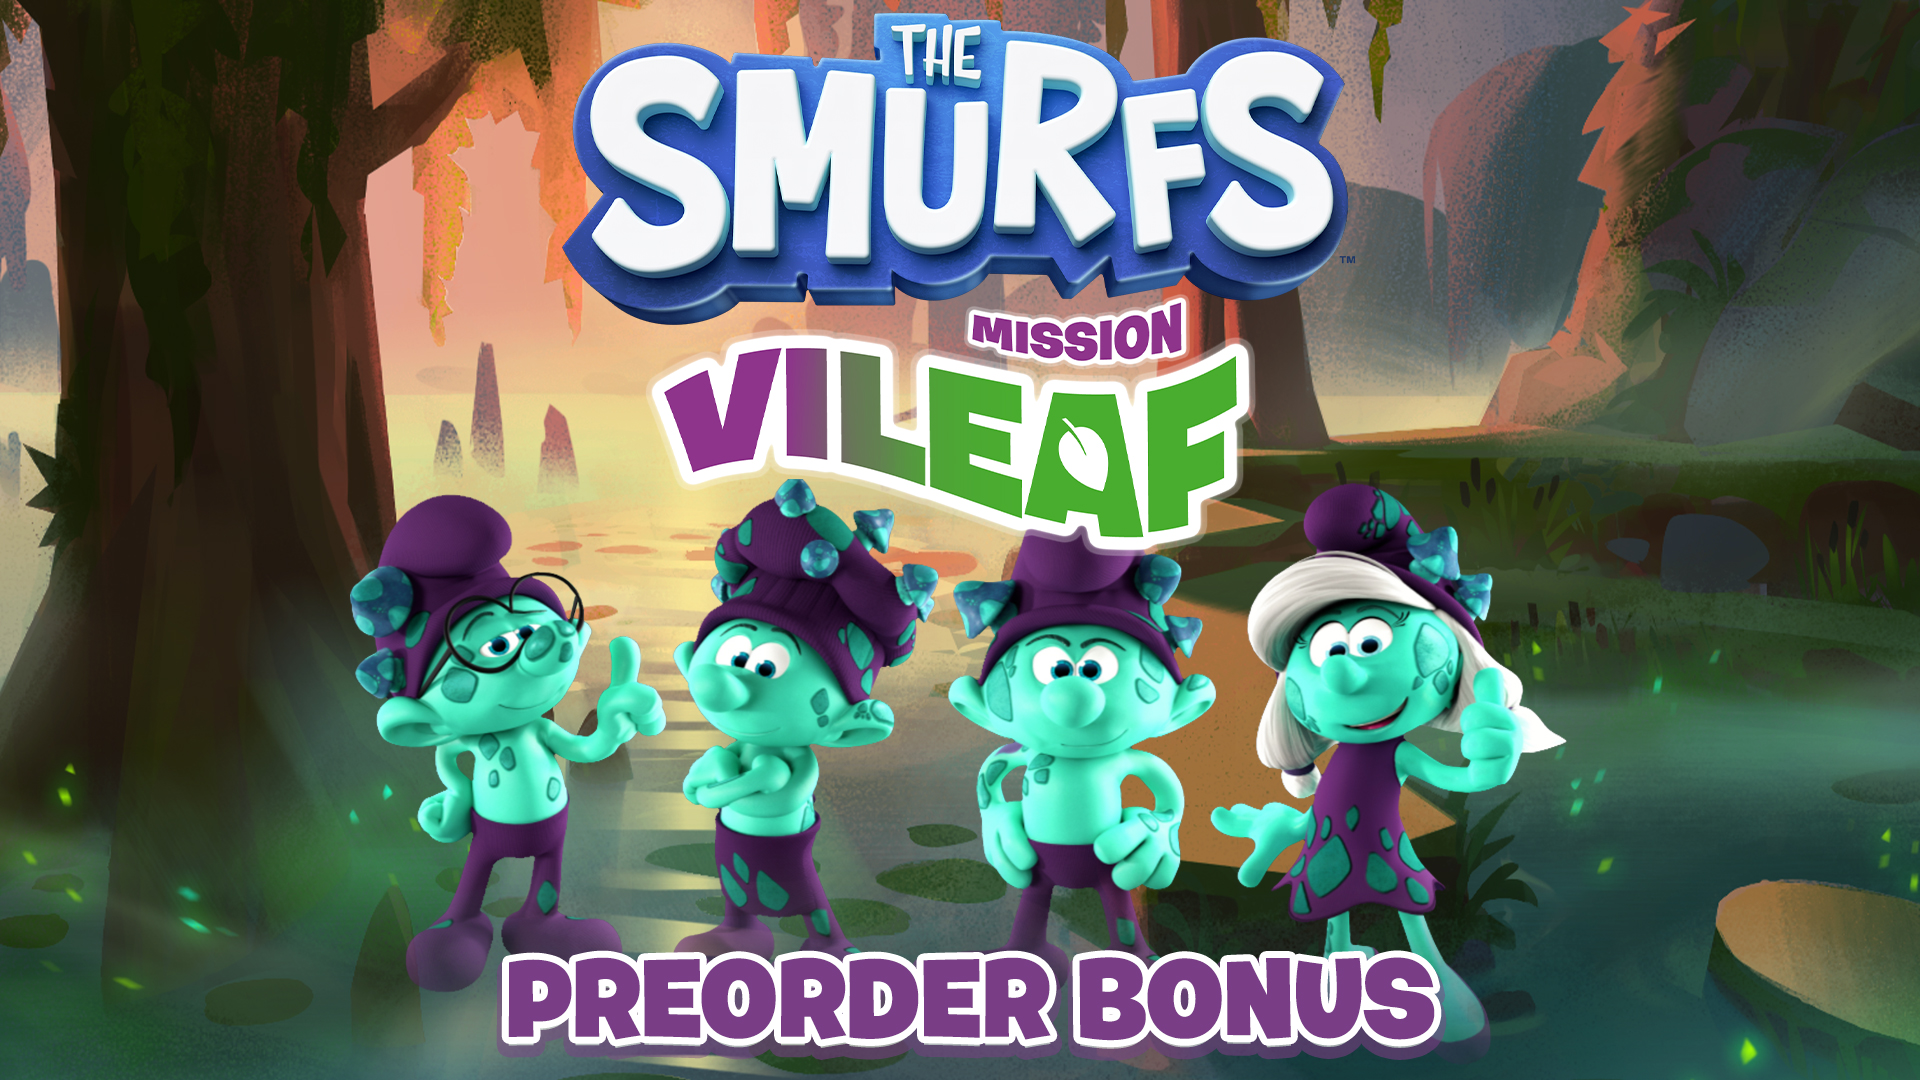 The Smurfs - Mission Vileaf - Preorder Bonus